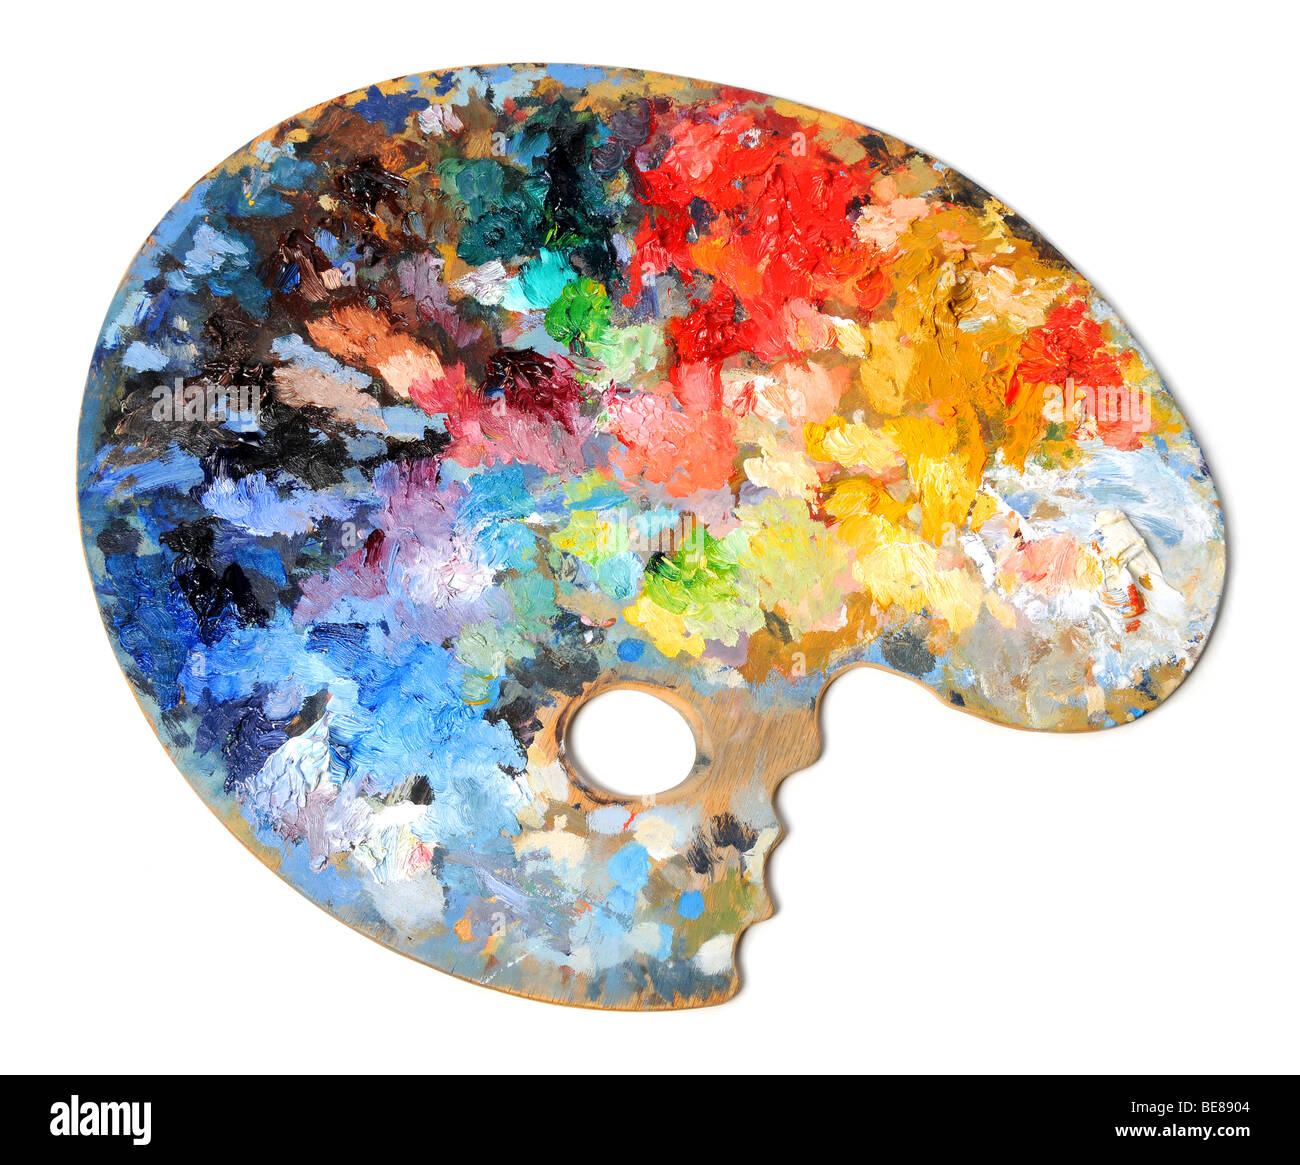 La palette de l'artiste isolé avec différentes couleurs sur fond blanc Banque D'Images